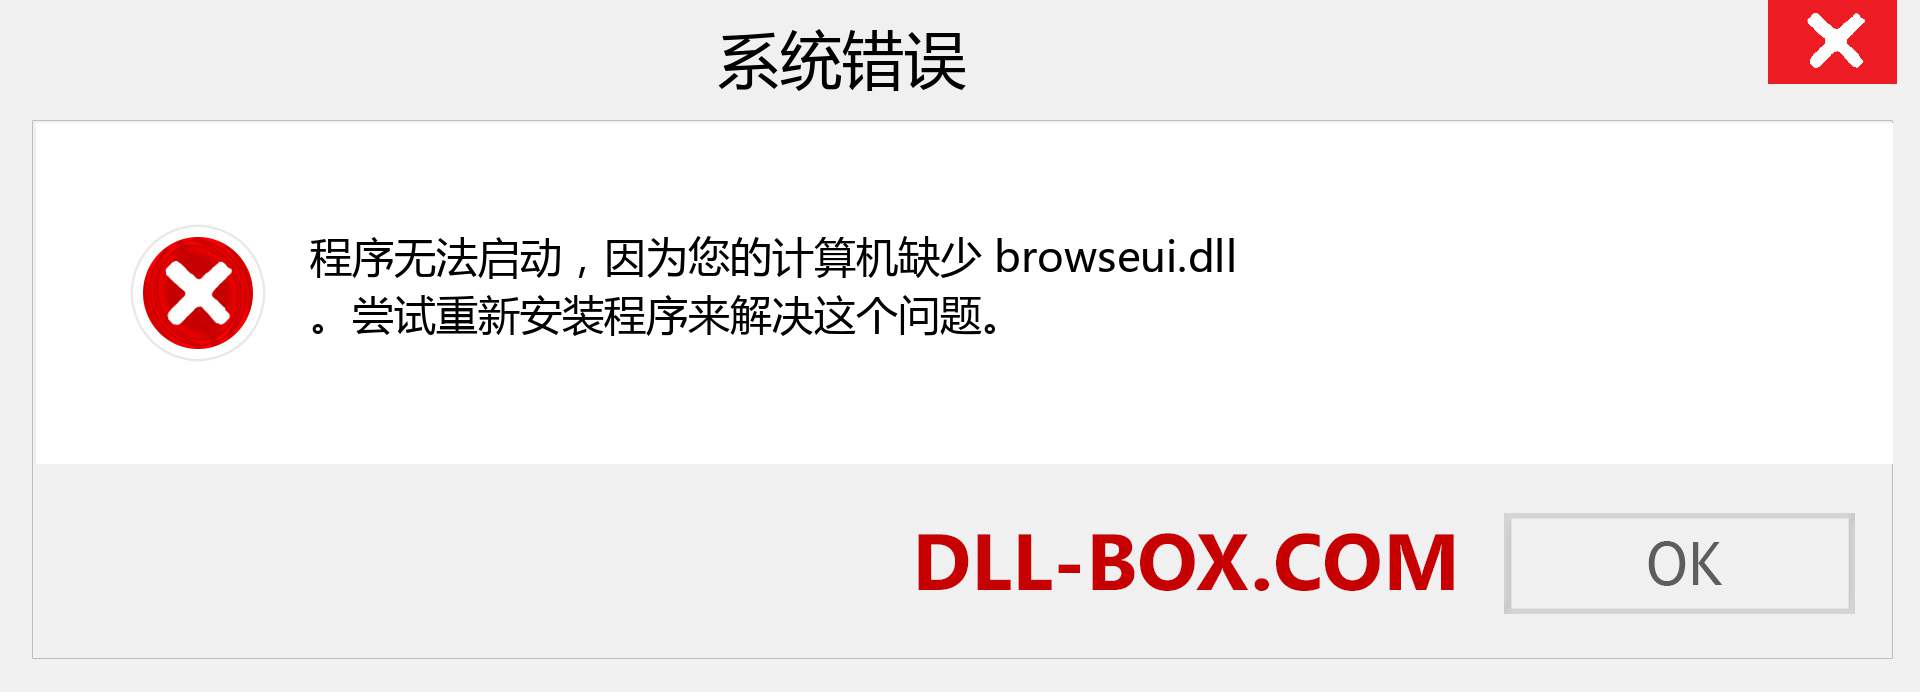 browseui.dll 文件丢失？。 适用于 Windows 7、8、10 的下载 - 修复 Windows、照片、图像上的 browseui dll 丢失错误